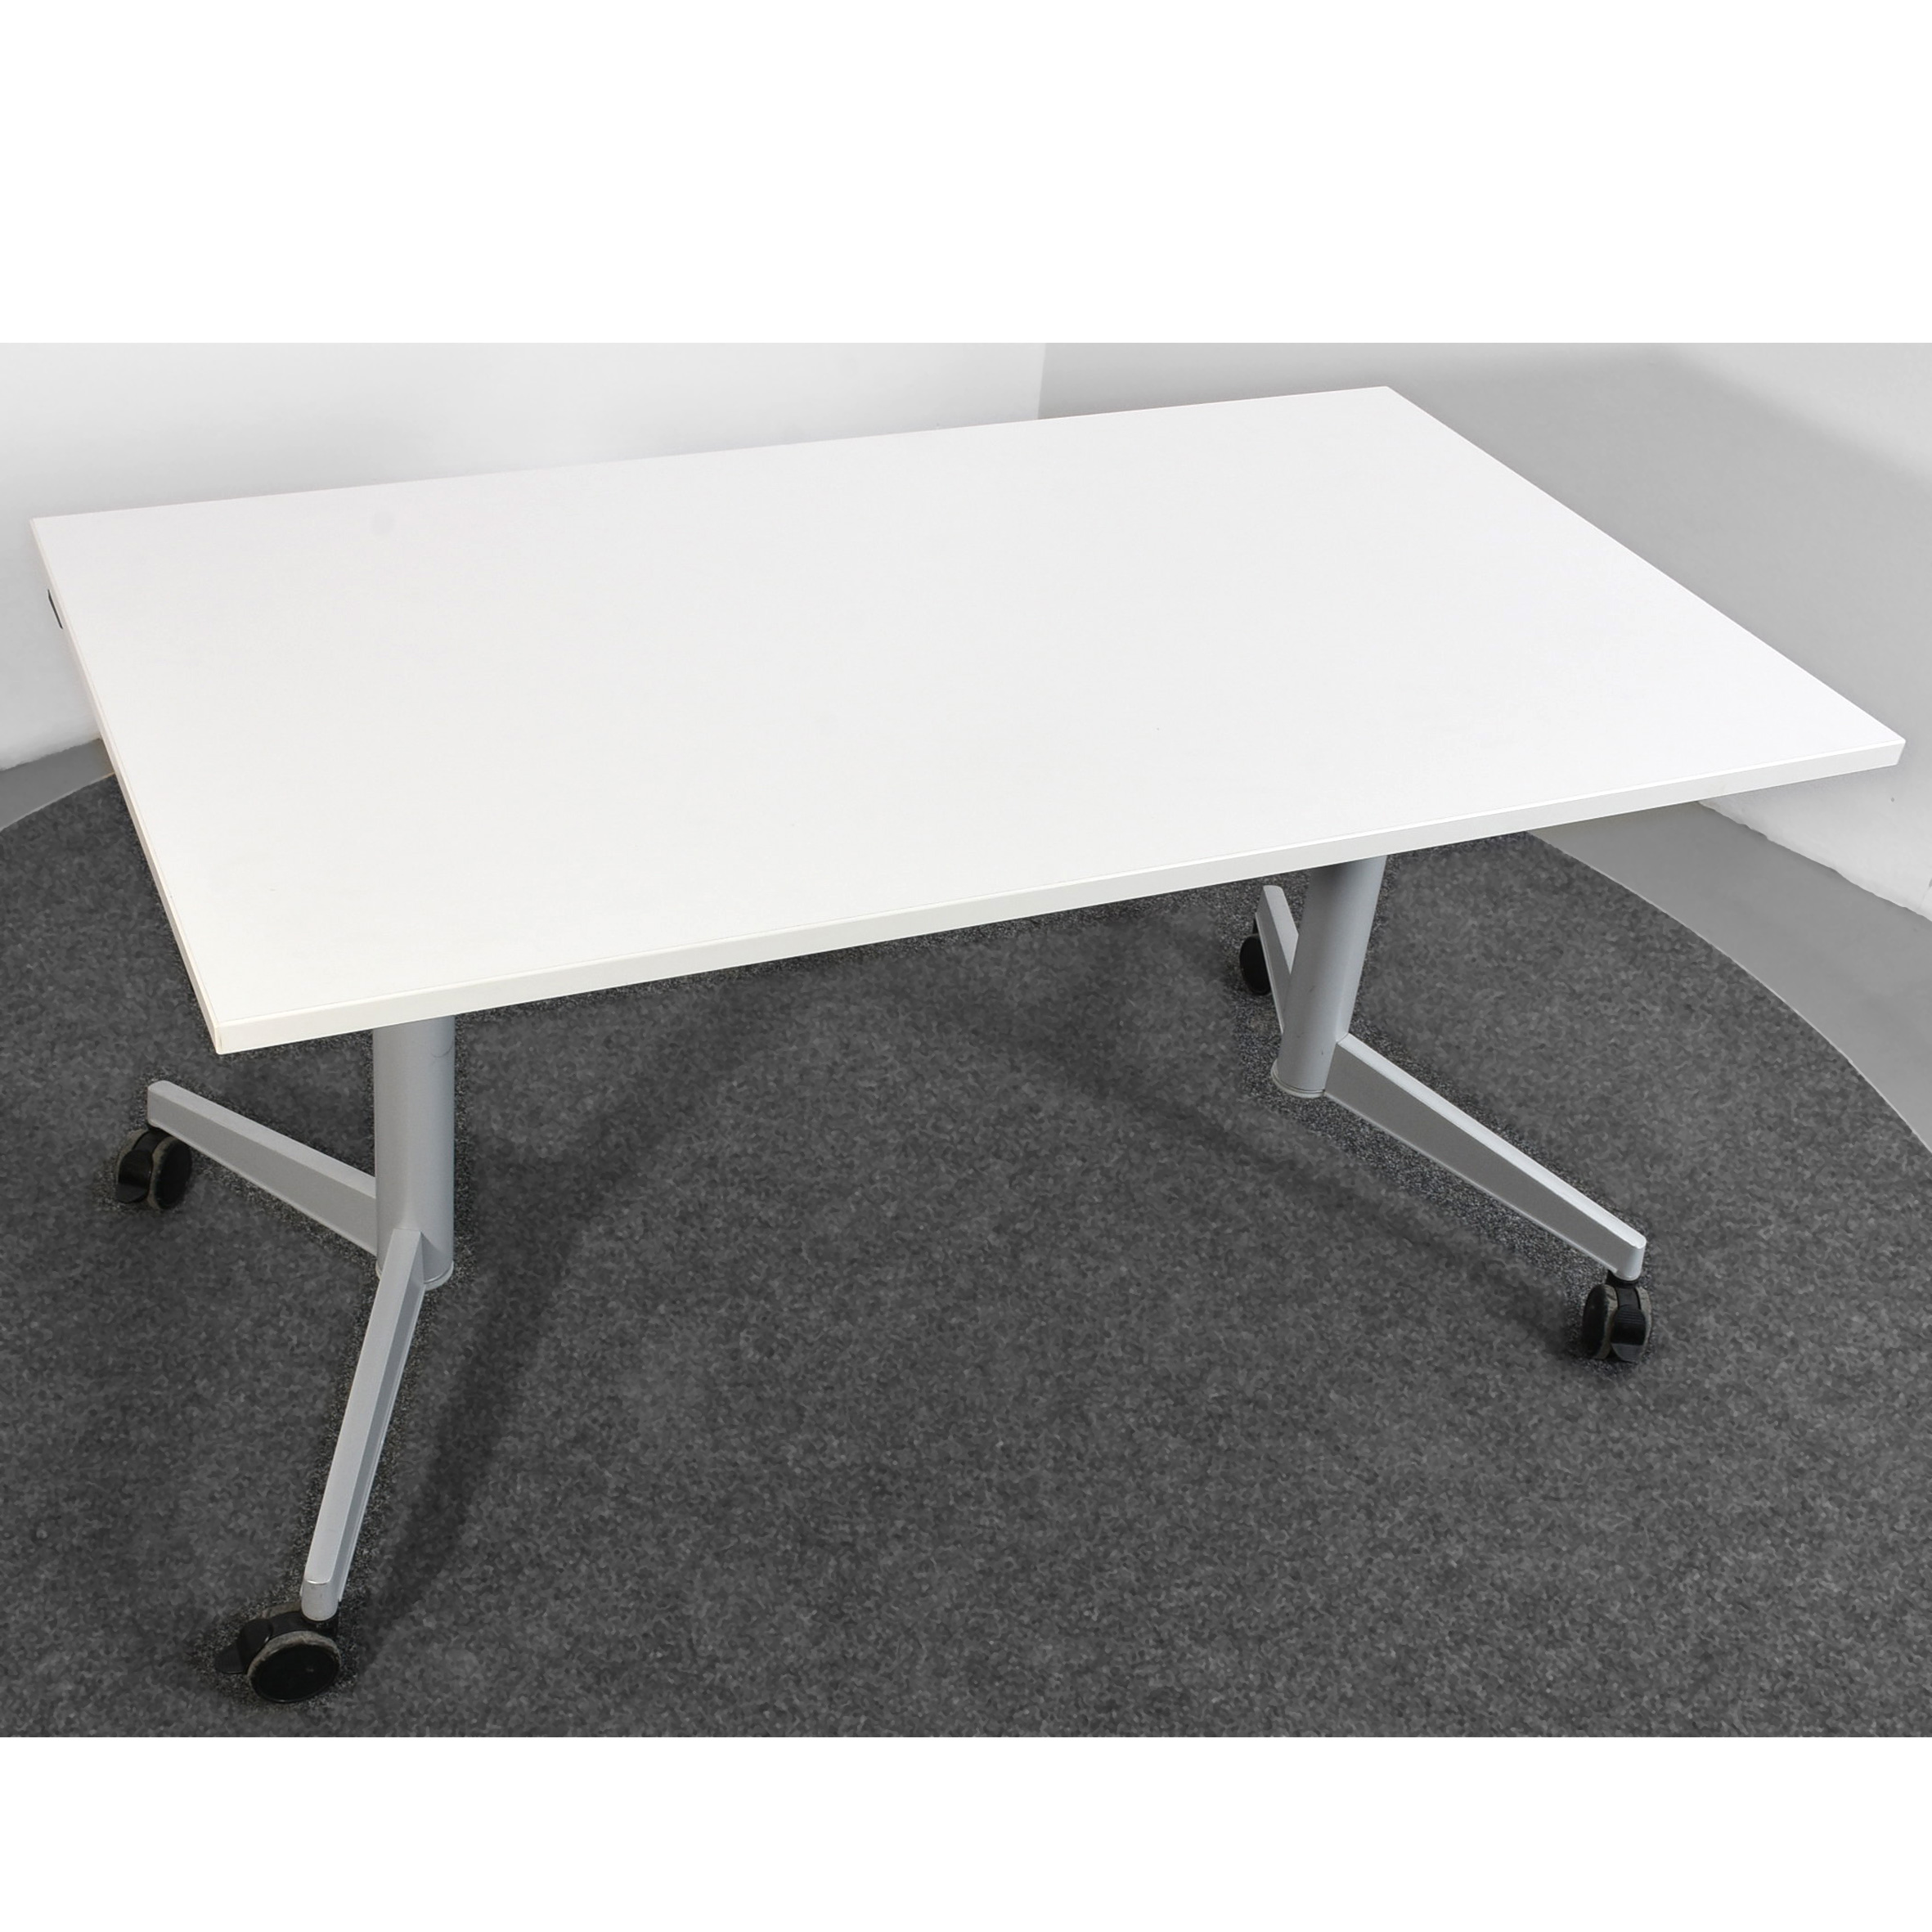 Schreibtisch, Tisch, klappbar, weiß/silber, auf Rollen, gebraucht